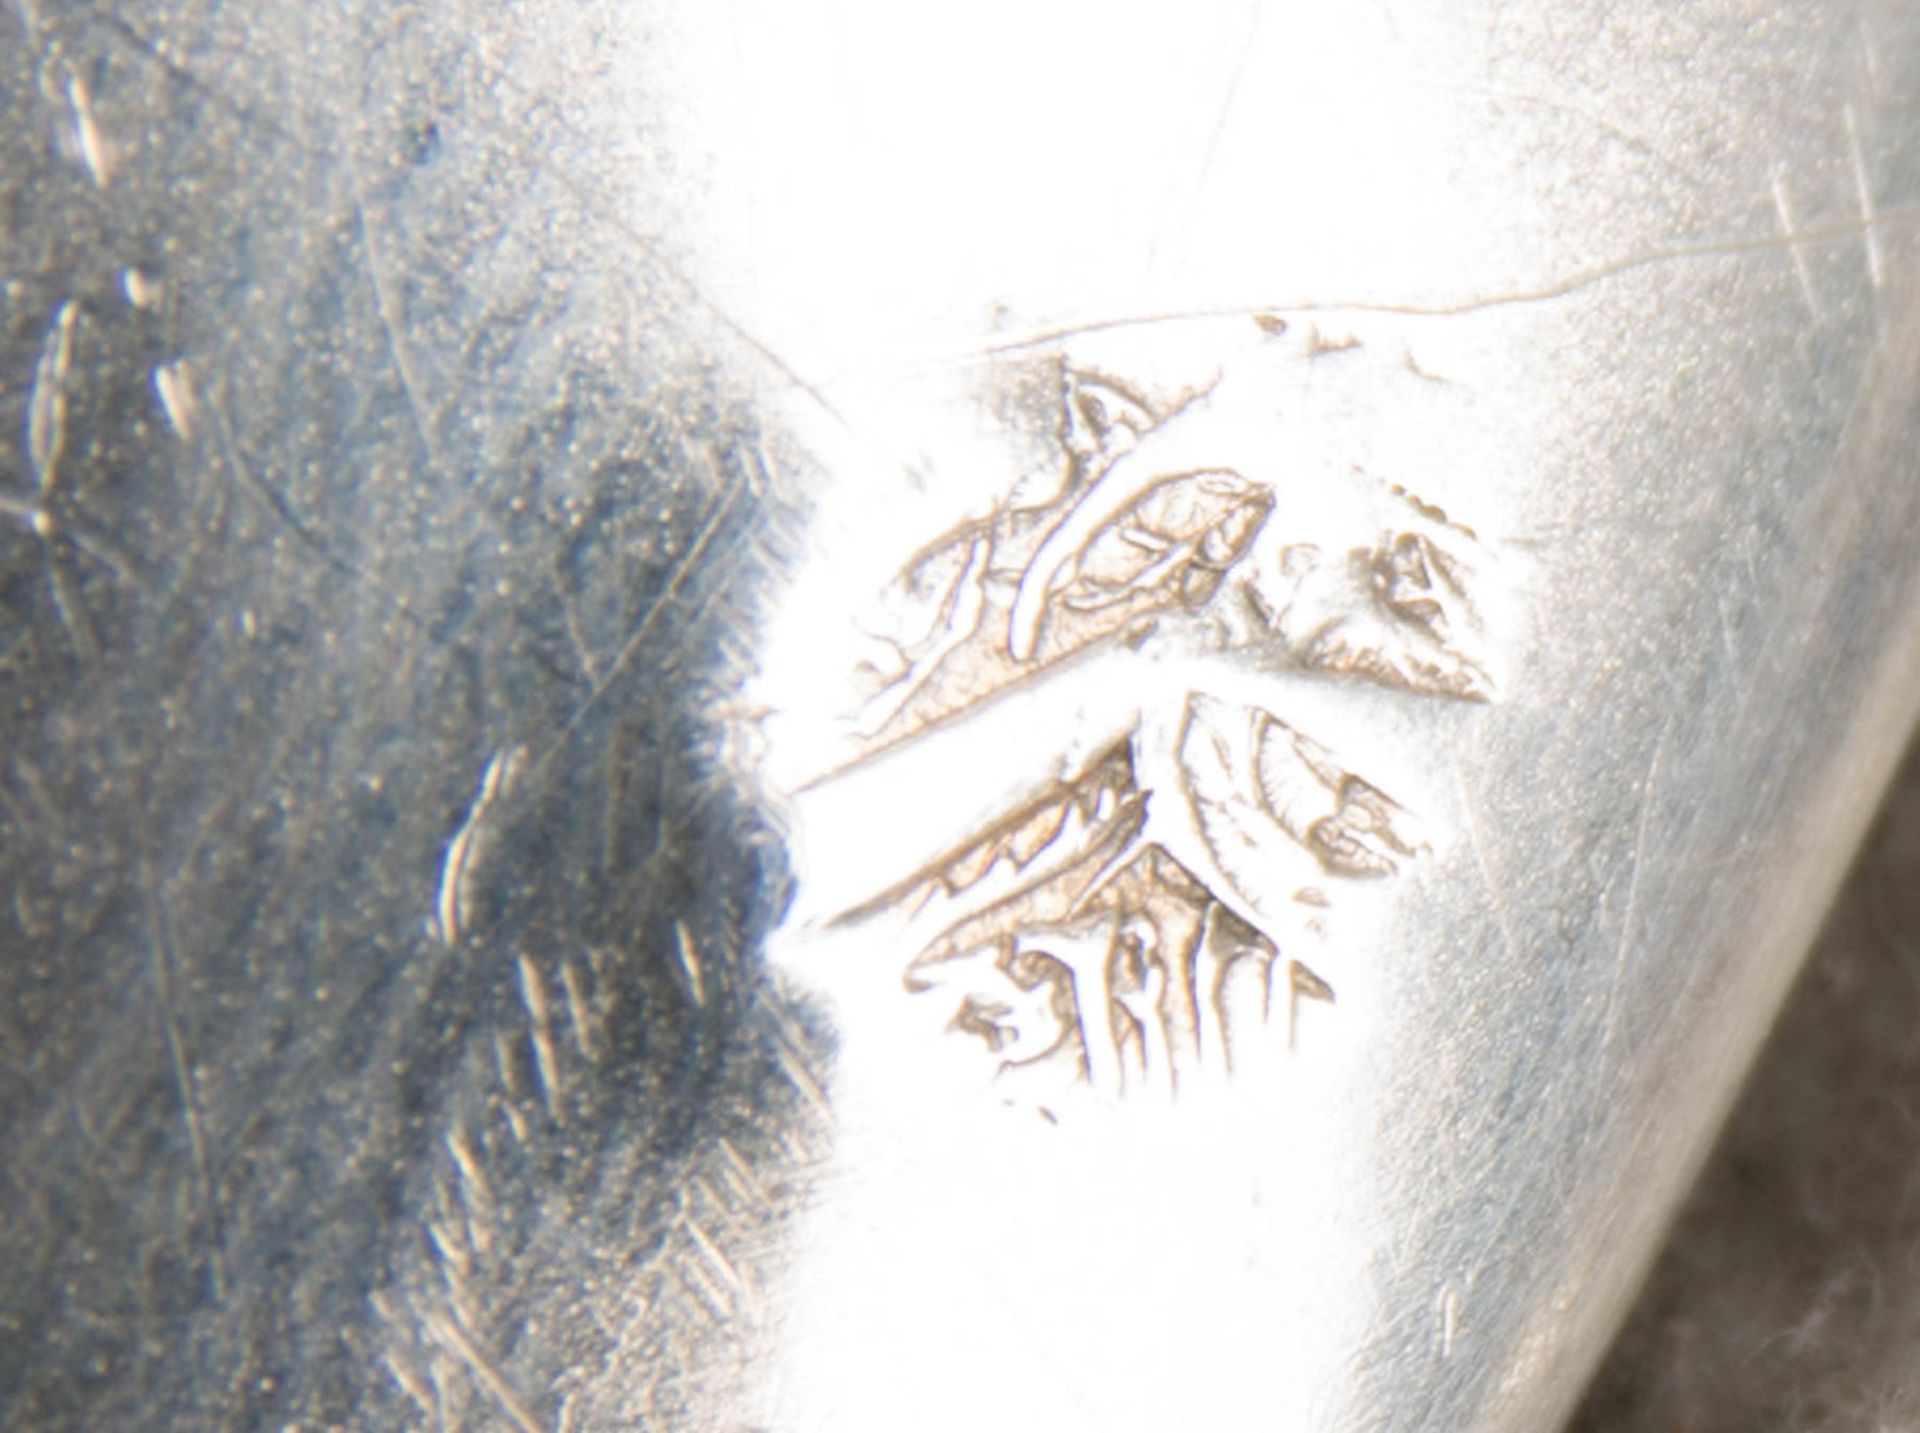 Herausragendes Besteckset der Marke Hauser Zivy & Cie, 950er Silber, Paris, 19. Jh. - Bild 18 aus 27